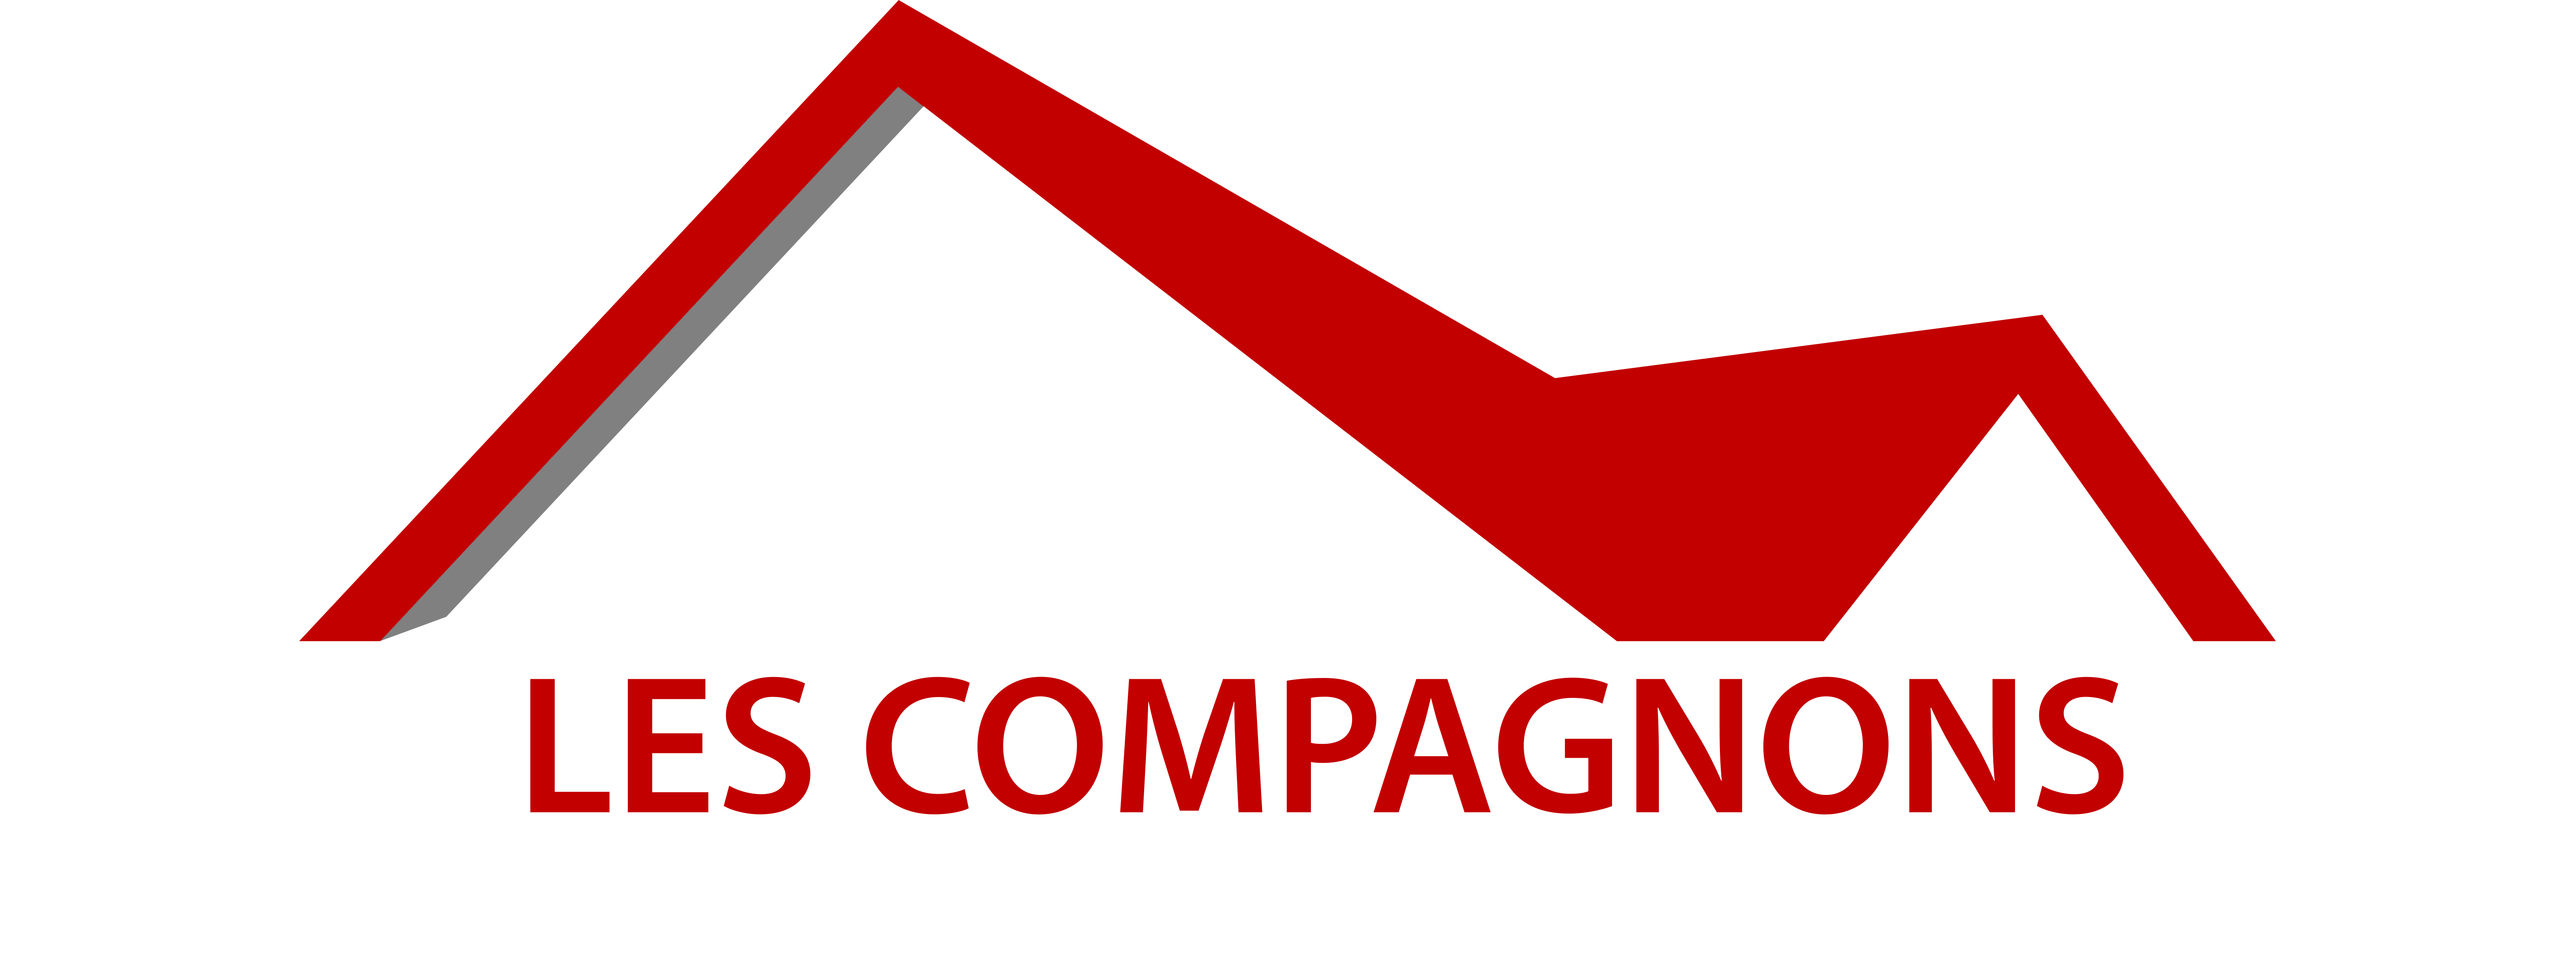 Entreprise de couverture et rénovation à Saint-Maur-des-Fossés (94) - Les Compagnons du Val de Marne dans le Val de Marne